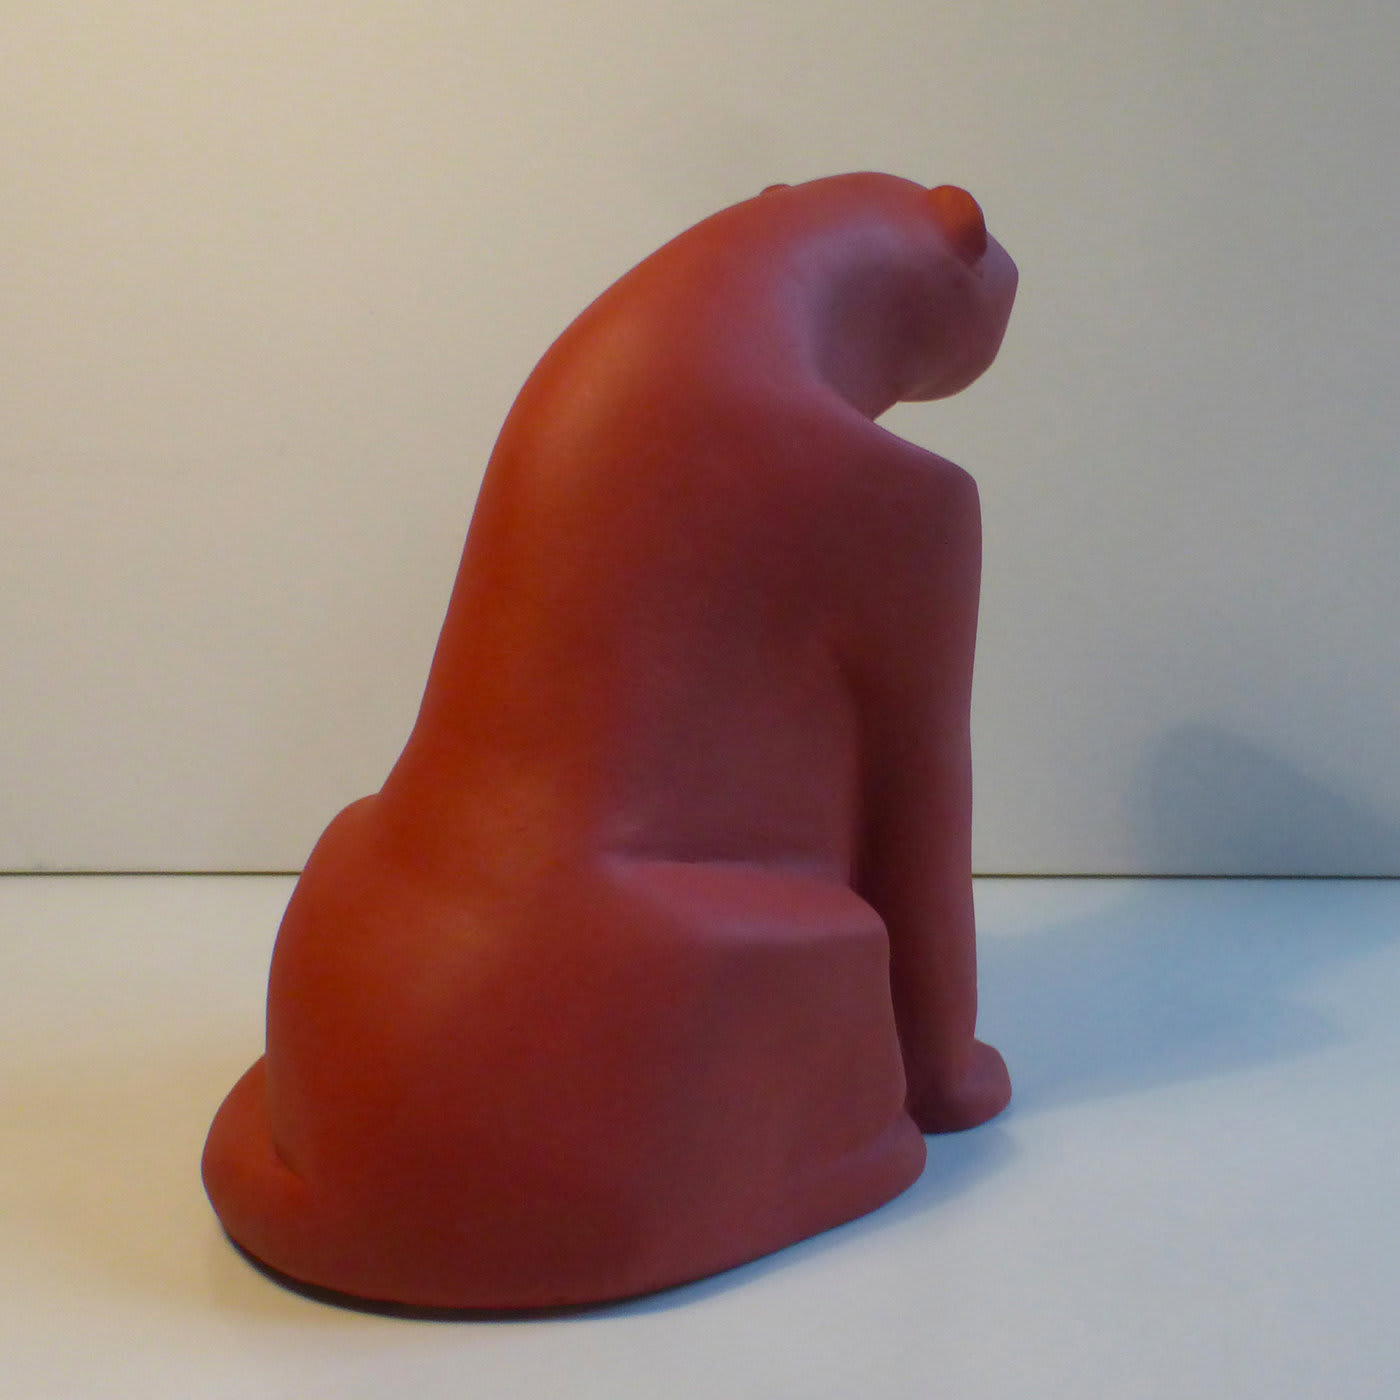 Red Panther Sculpture - Daniele Nannini